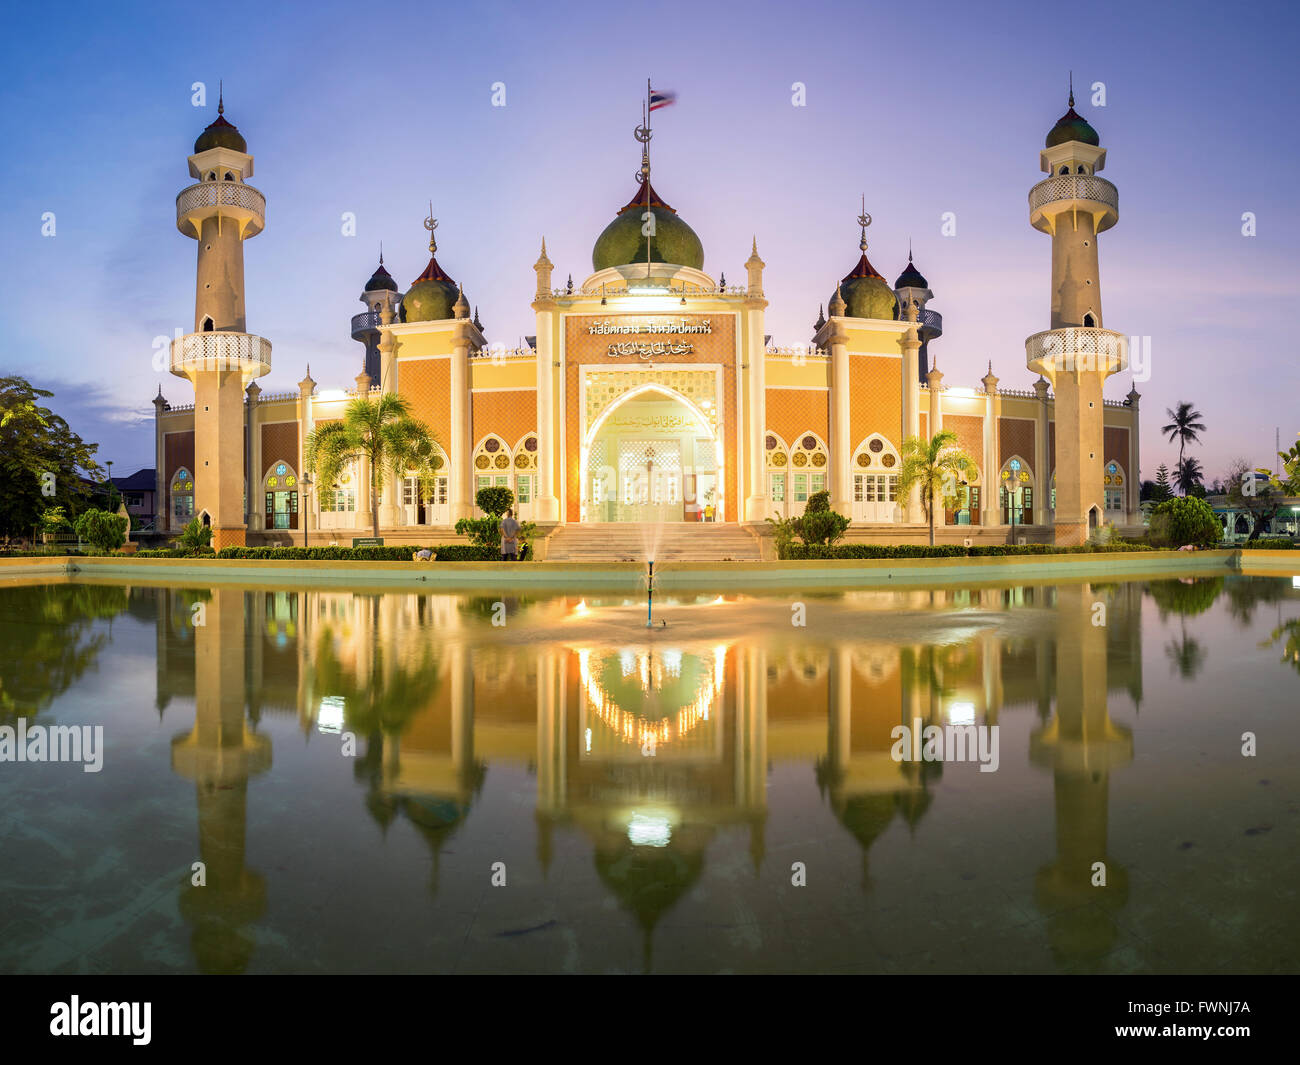 La mosquée centrale d'une réflexion au crépuscule, Pattani, Thaïlande Banque D'Images